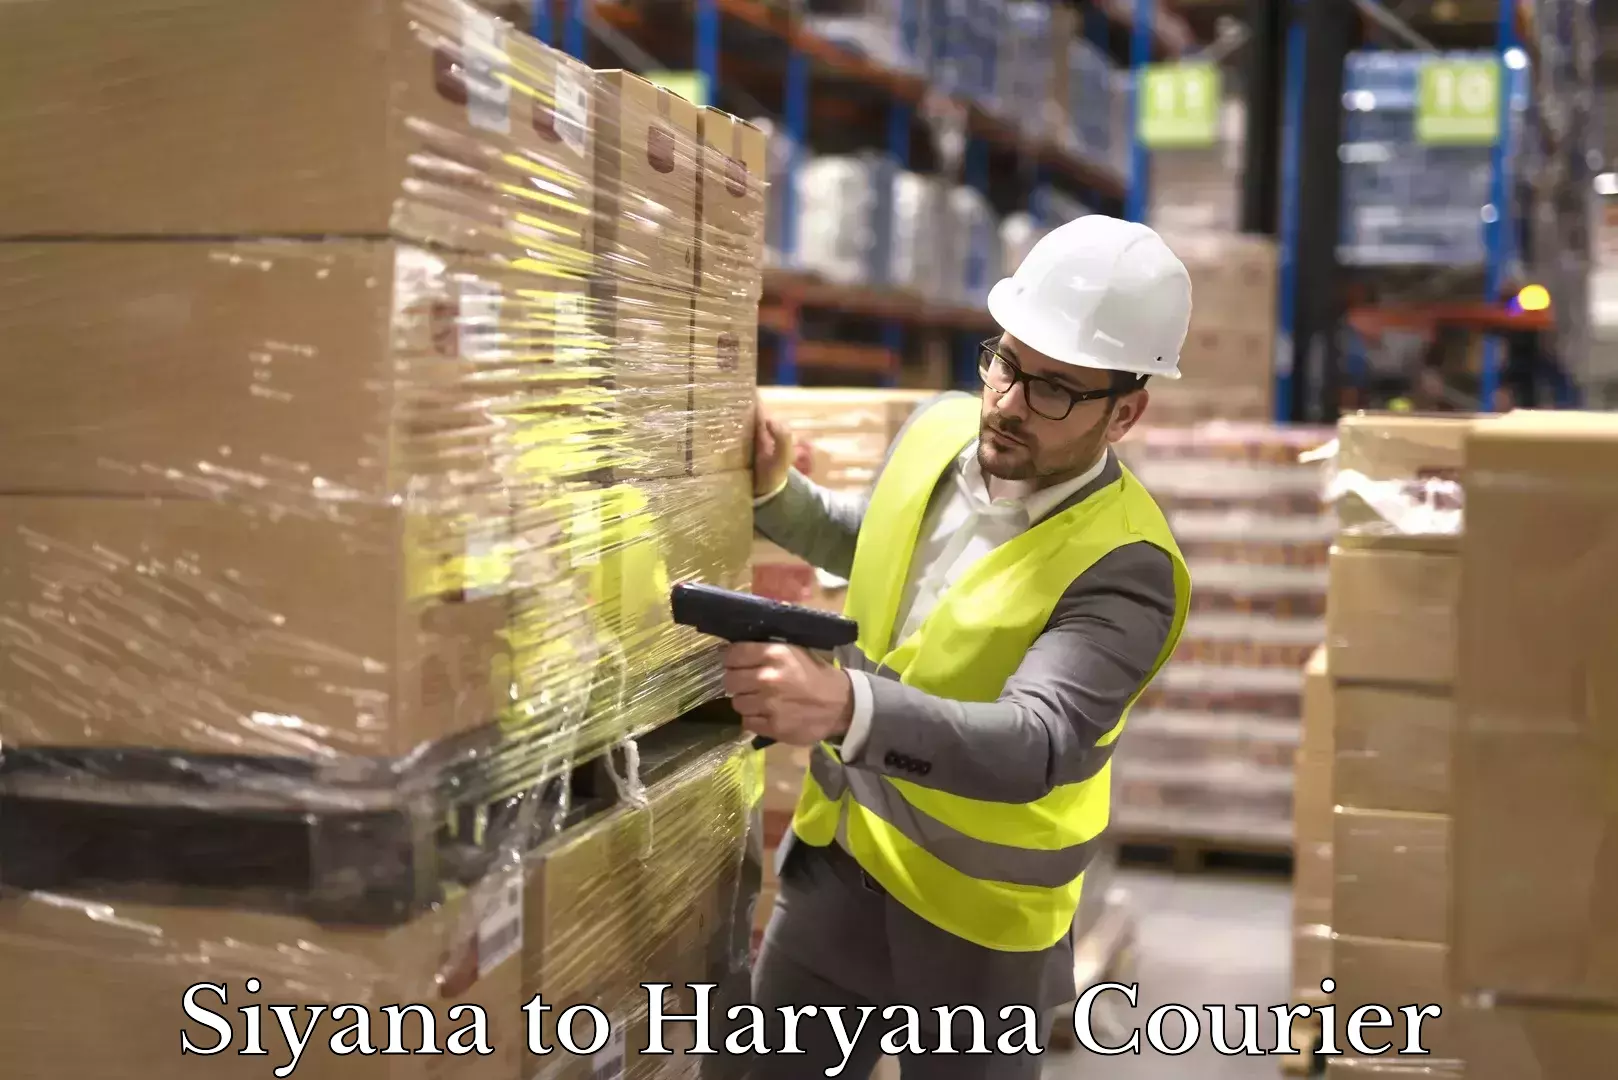 Express mail solutions Siyana to Haryana